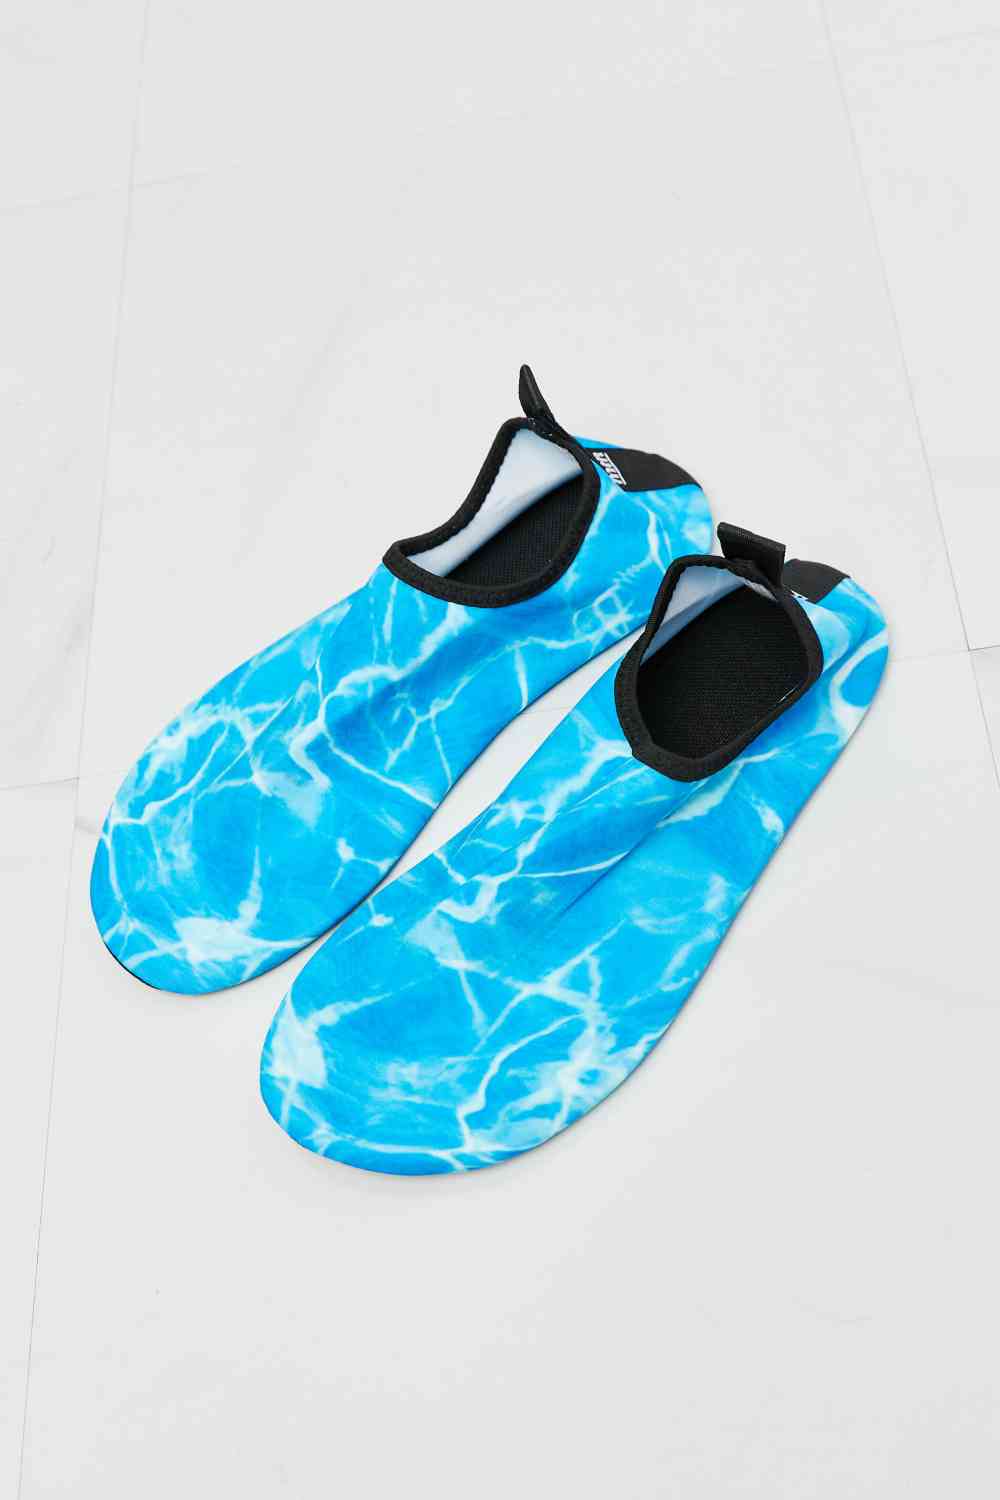 Chaussures aquatiques MMshoes On The Shore en bleu ciel